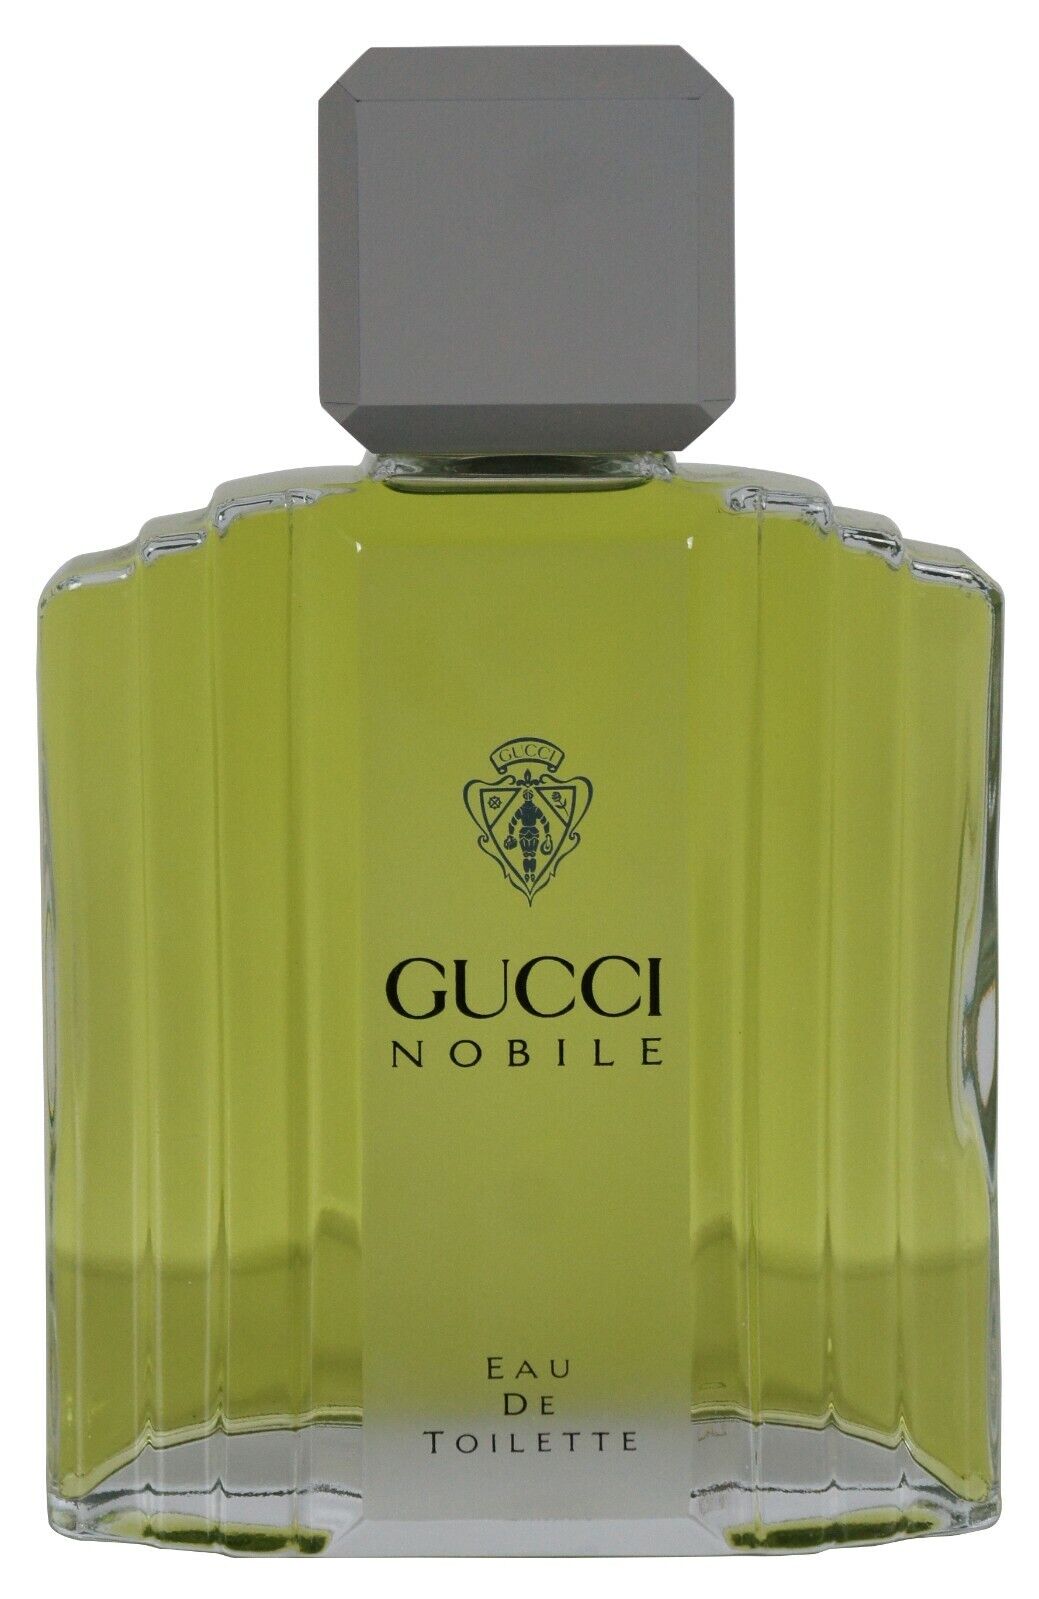 Gucci Nobile Eau Toilette Factice Dummy Cologne Perfume Bottle Store Display 11\